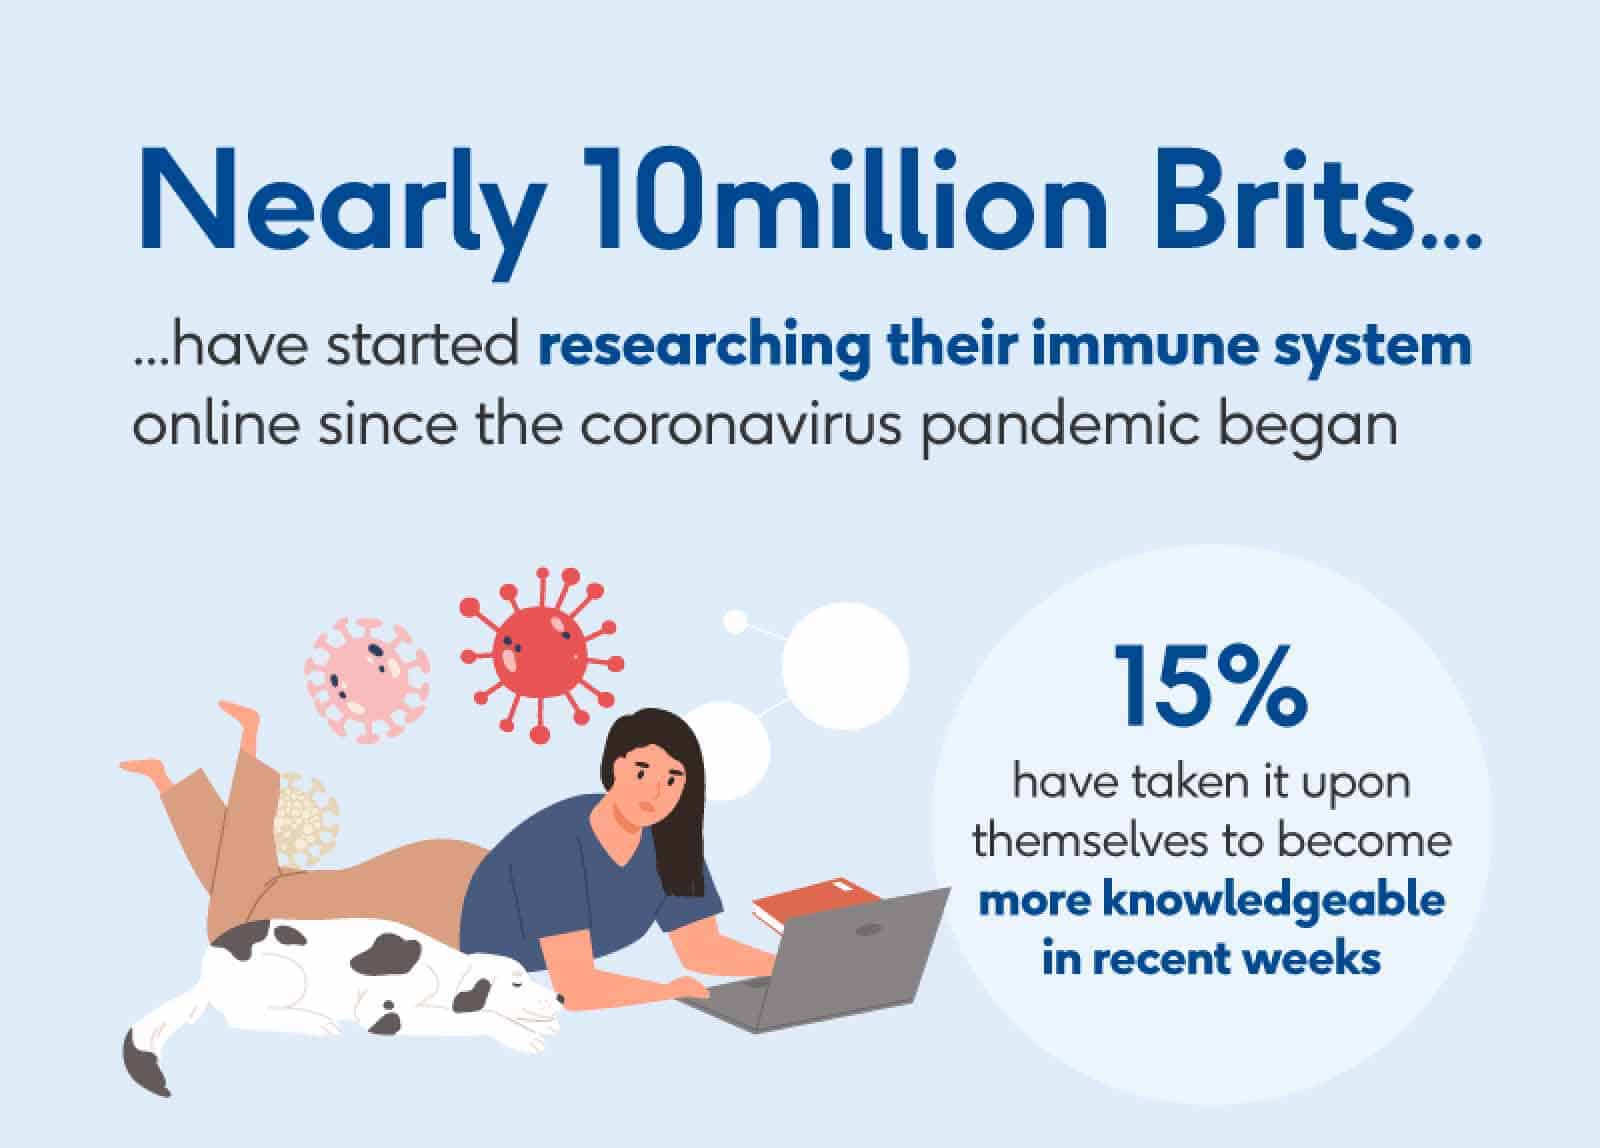 Los adultos británicos han comenzado a investigar su sistema inmunológico en Internet